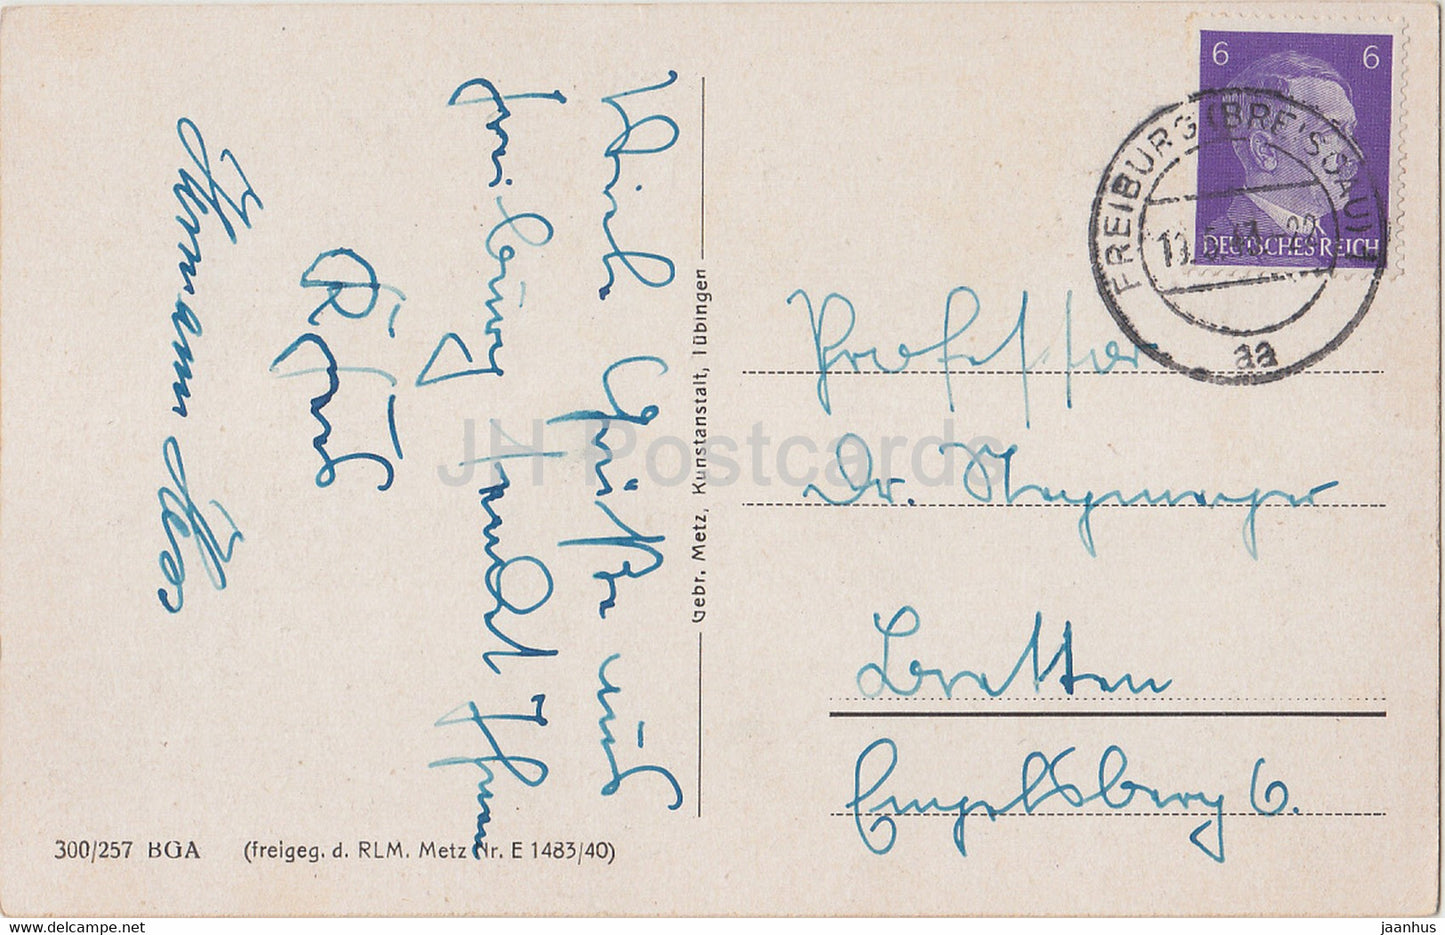 Freiburg i Br - Oberlinden - carte postale ancienne - 1943 - Allemagne - utilisé